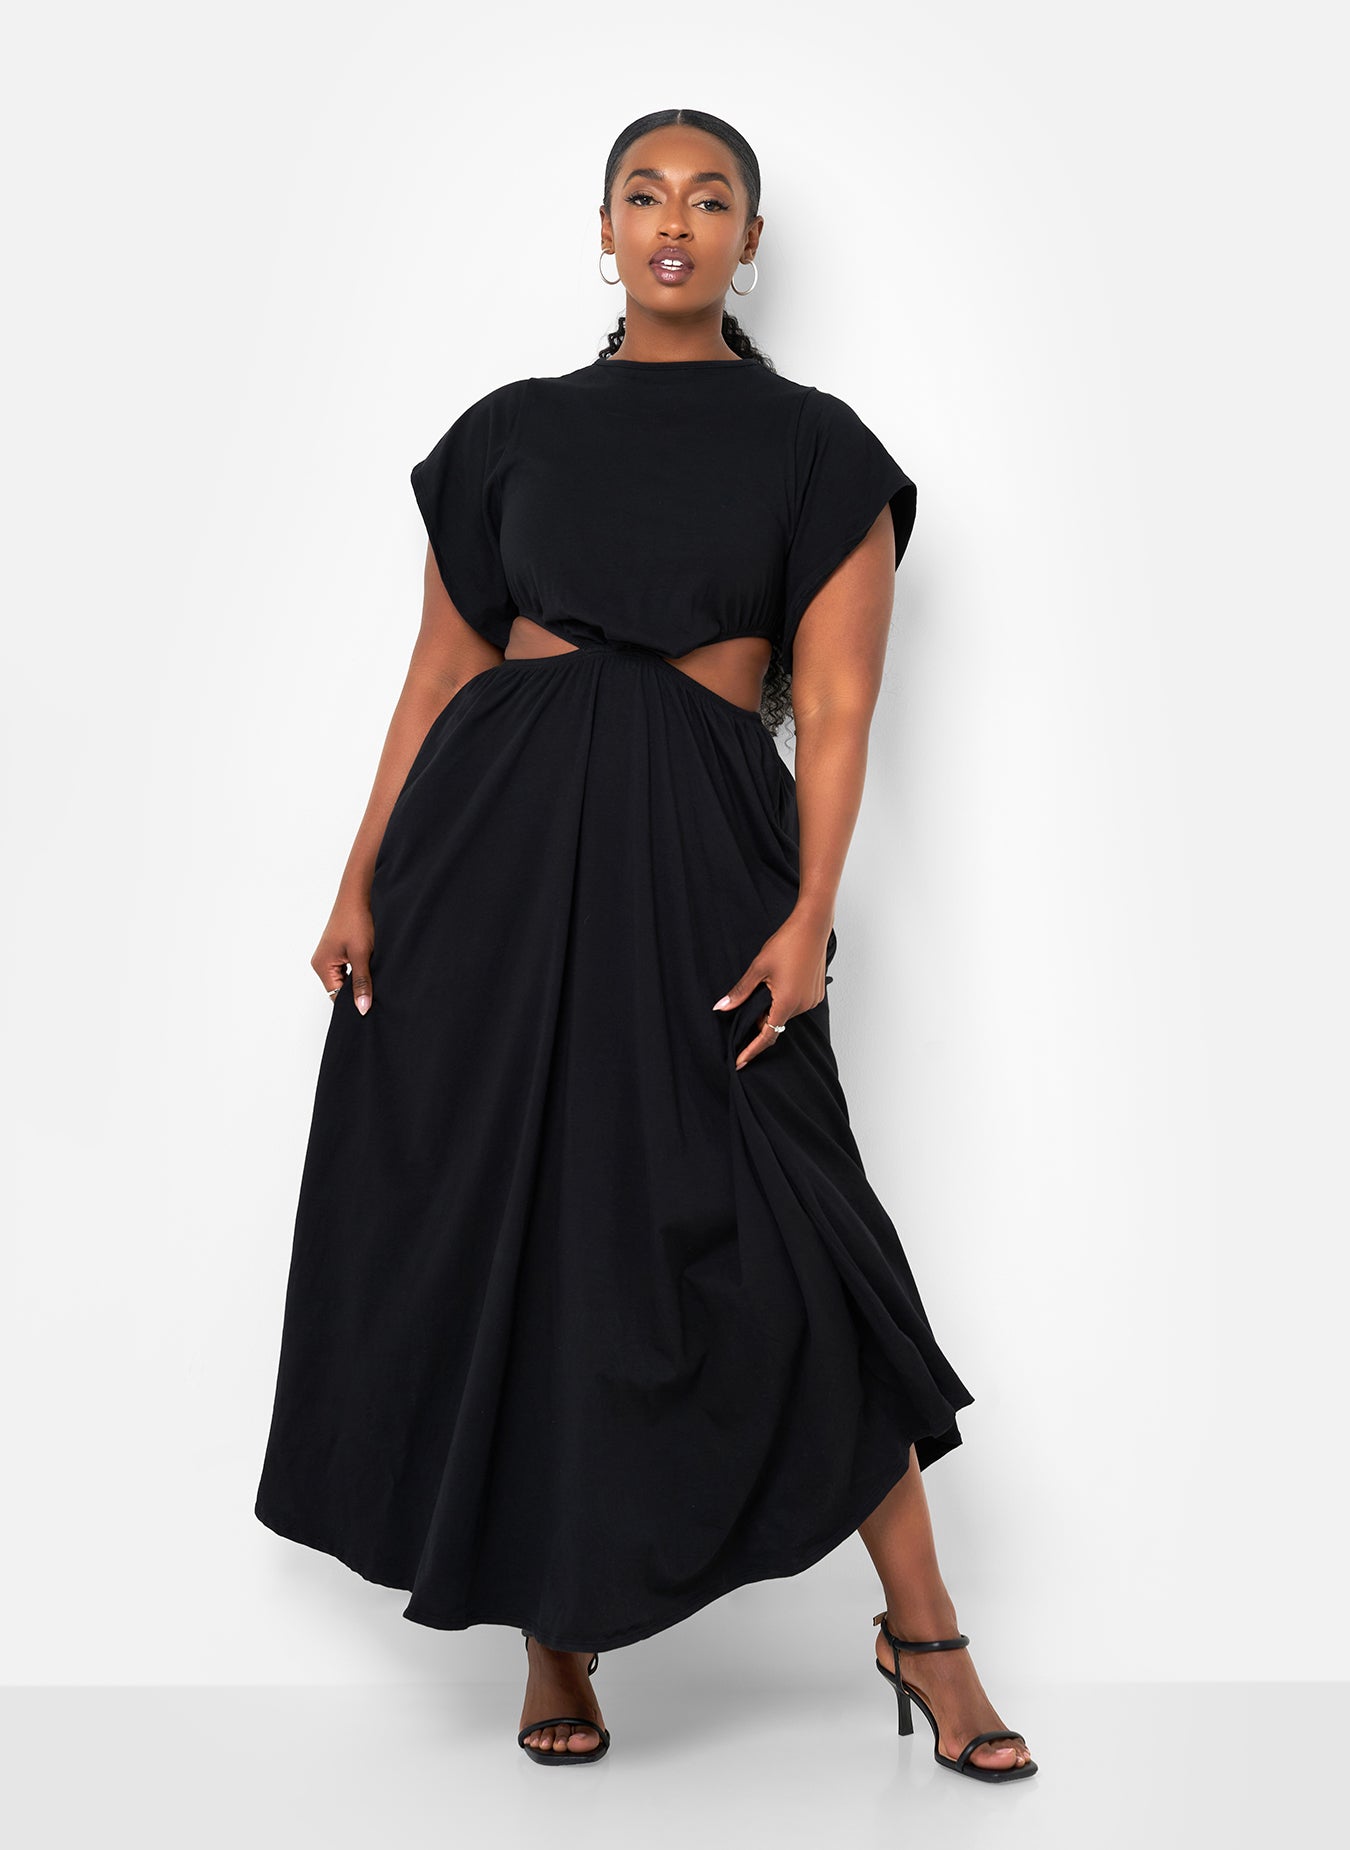 Shop Plus Size Black Dresses for Women's - New Arrivals – REBDOLLS